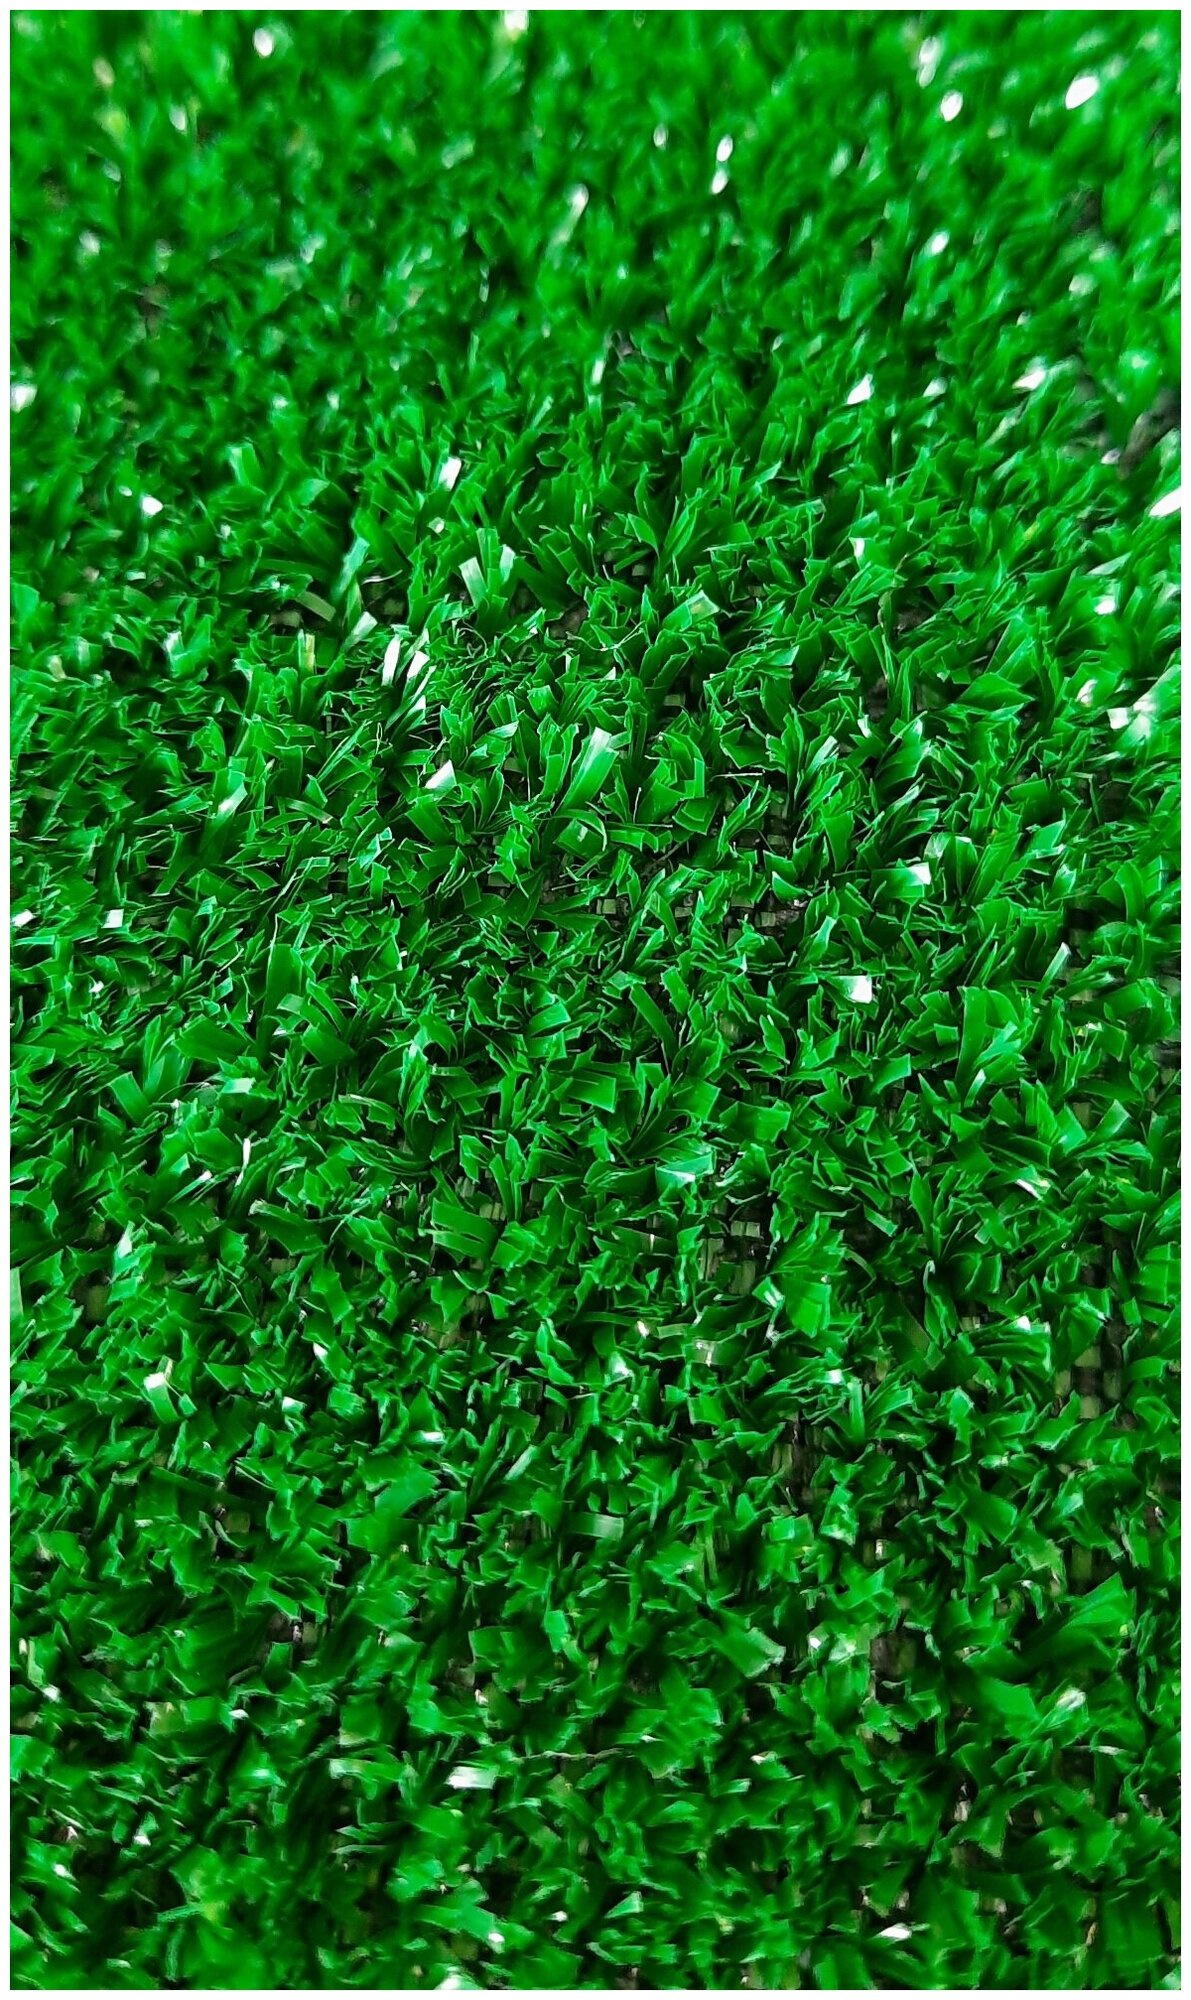 Искусственная трава, газон, покрытие, Витебские ковры, зеленая, 1.2*2 м